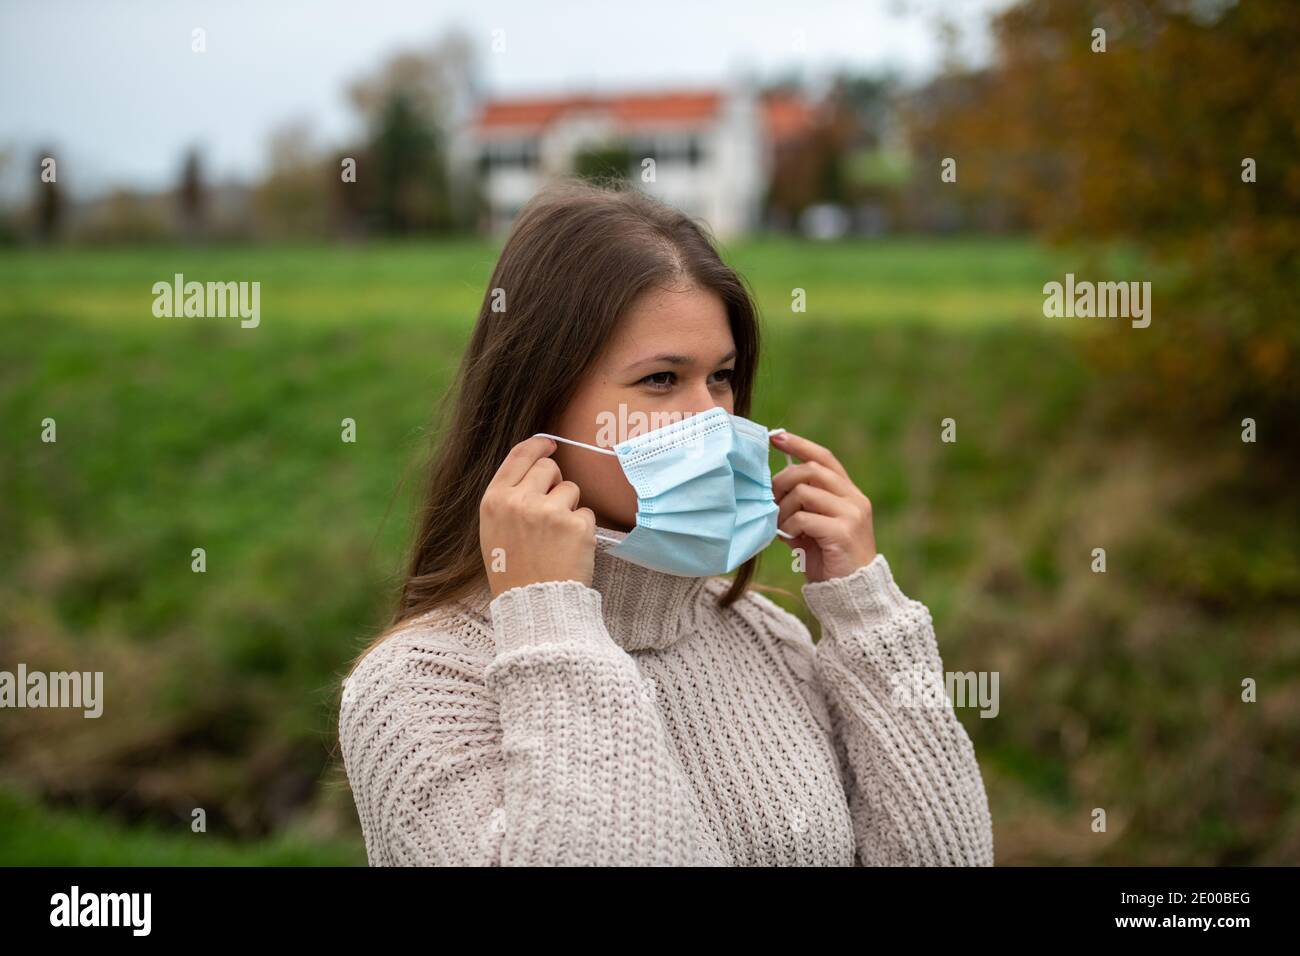 Junge Frau im Park trägt Schutzmaske während Pandemie covid-19, Herbstsaison Stockfoto